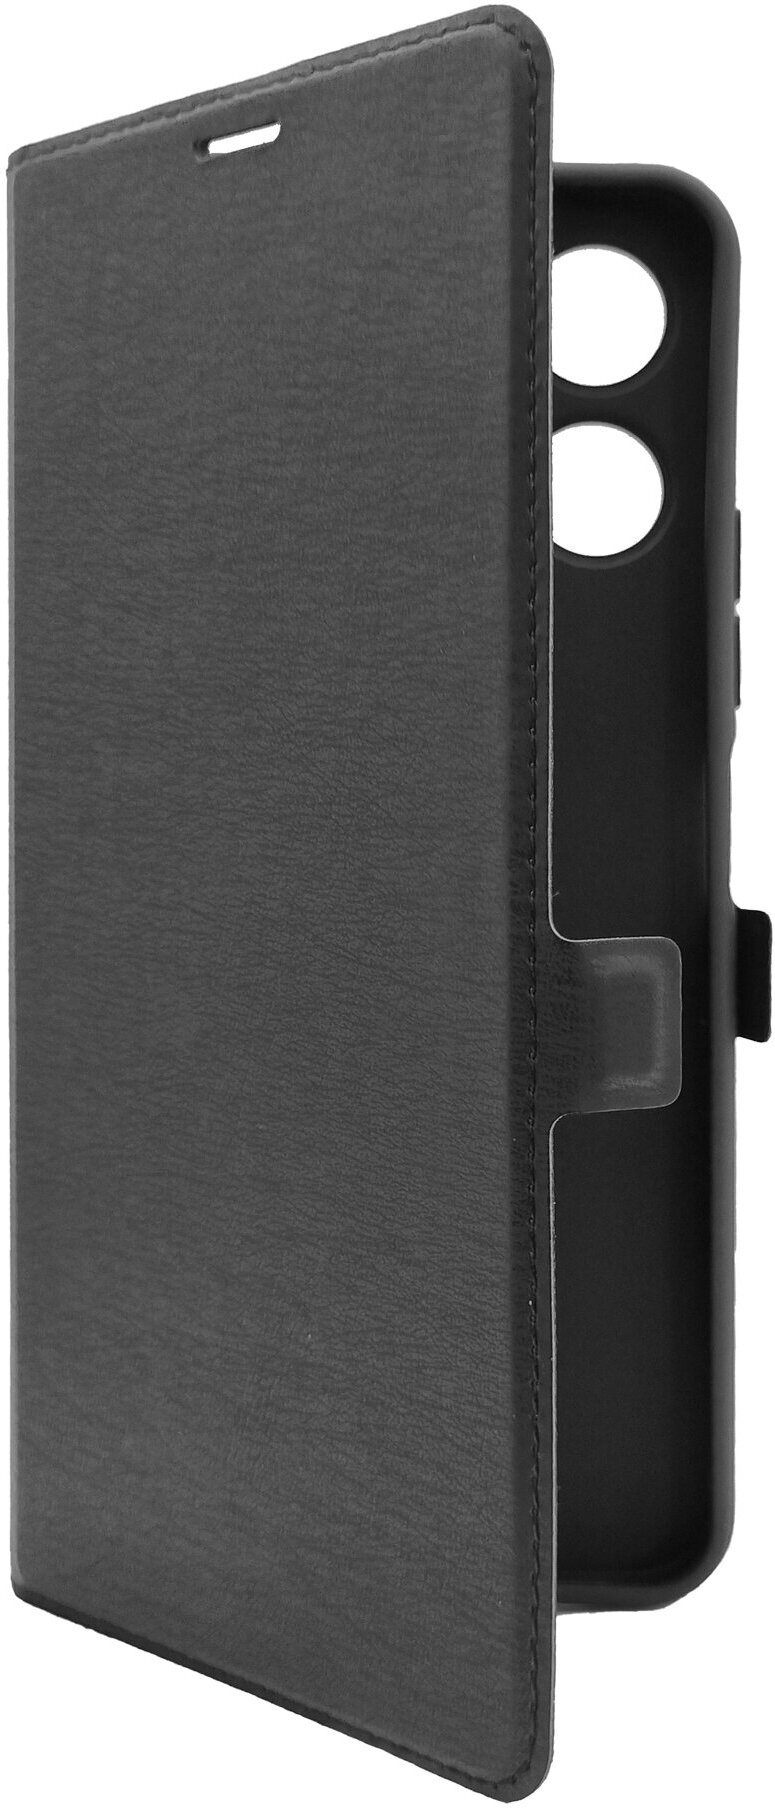 Чехол на Xiaomi Redmi 12 (Ксиоми Редми 12) черный книжка эко-кожа с функцией подставки отделением для пластиковых карт и магнитами Book case, Miuko